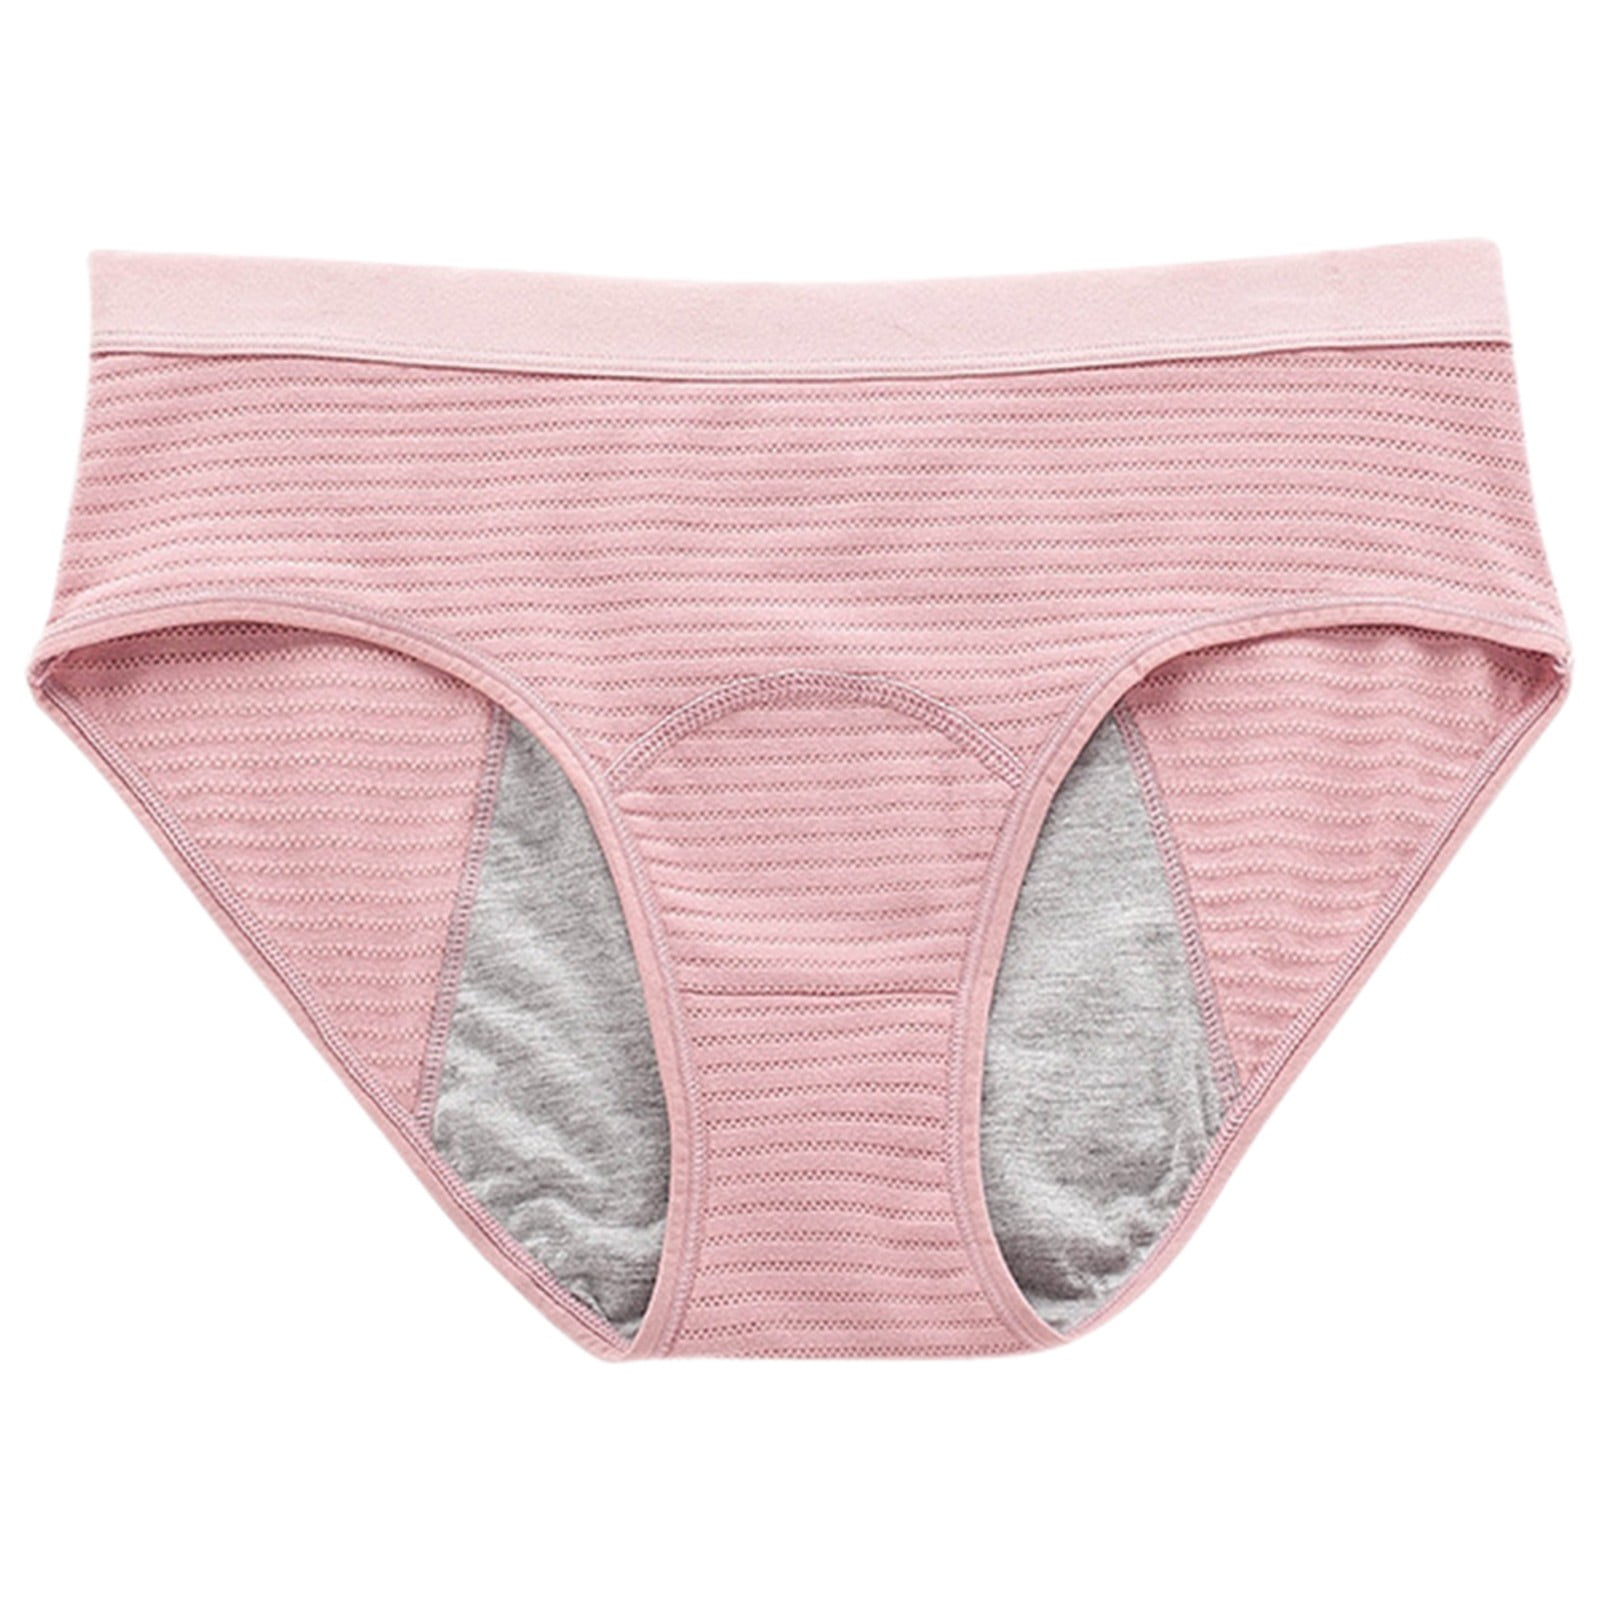 Ladies Briefs Menstrual Aunt Panties Leak proof Knickers Period Panty  Underpants